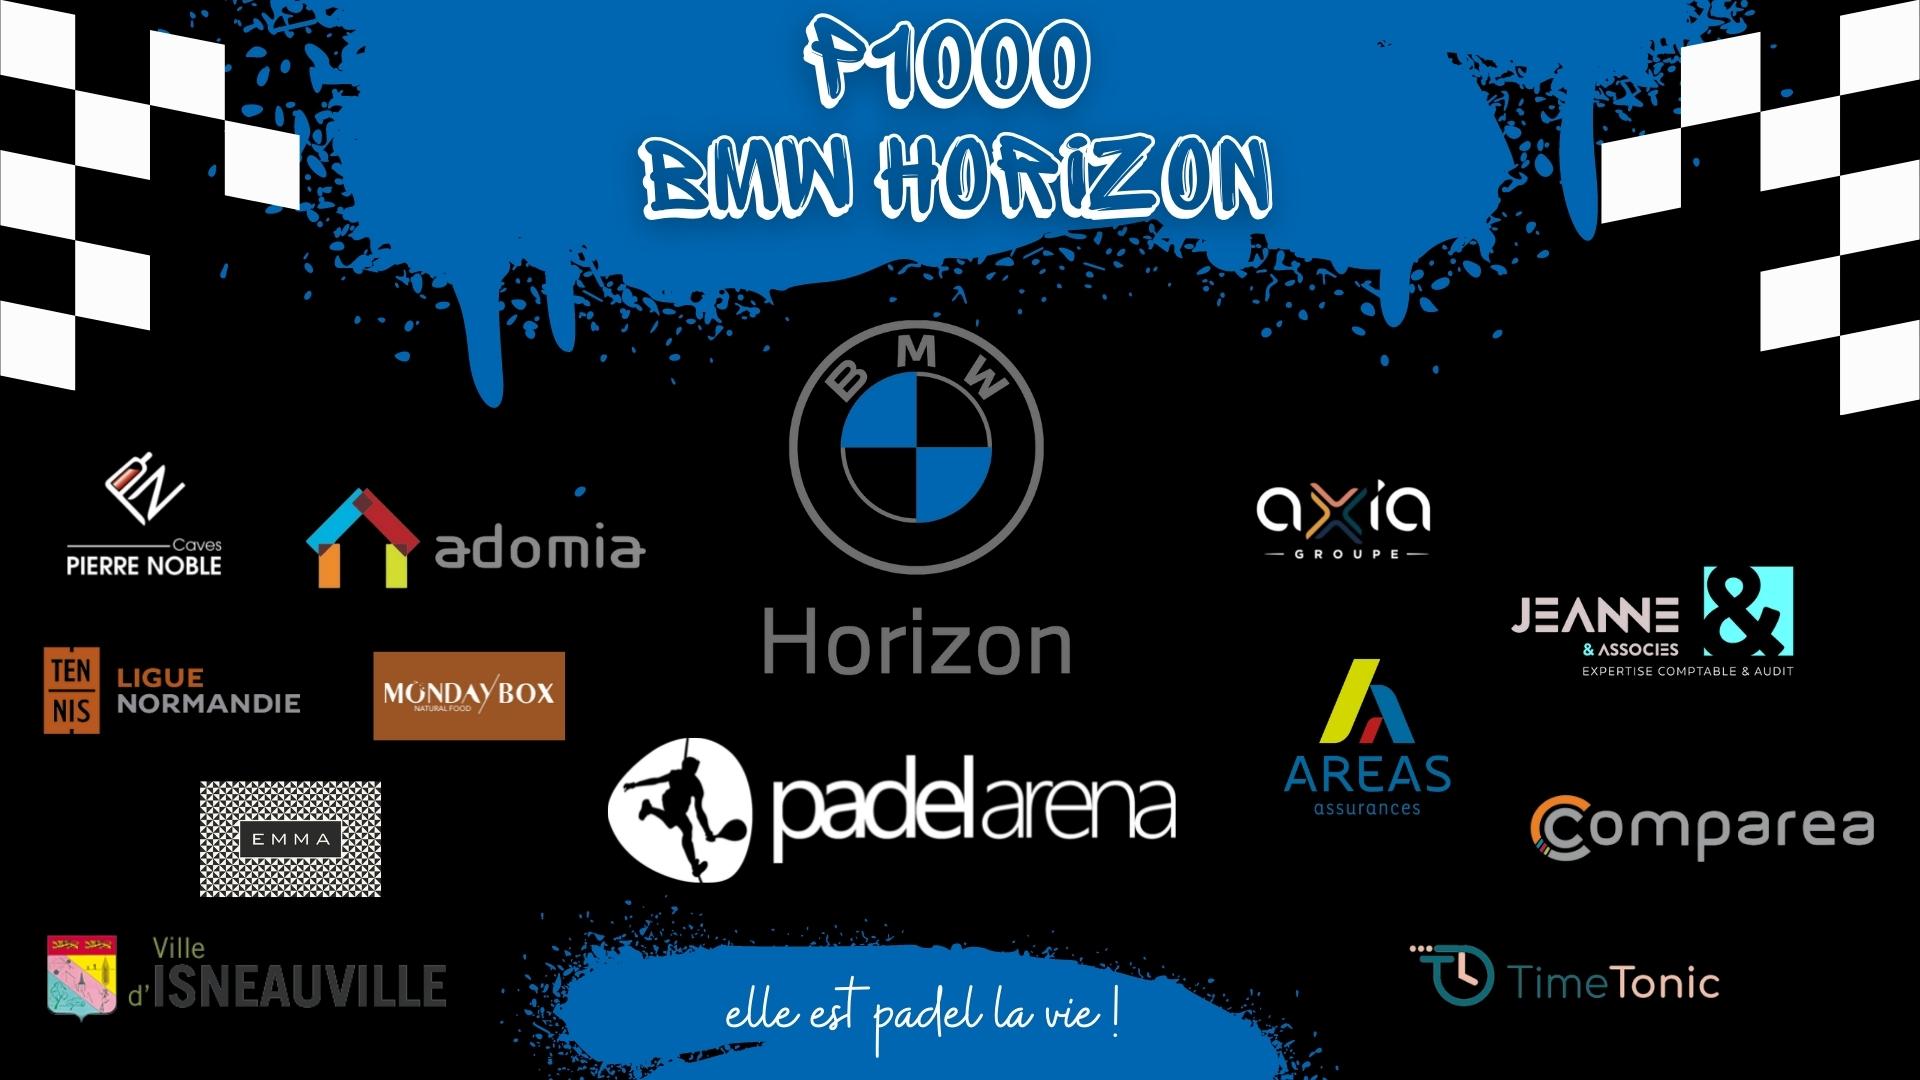 Abierta Padel Arena – BMW Horizon 2022: programa, resultados y en directo